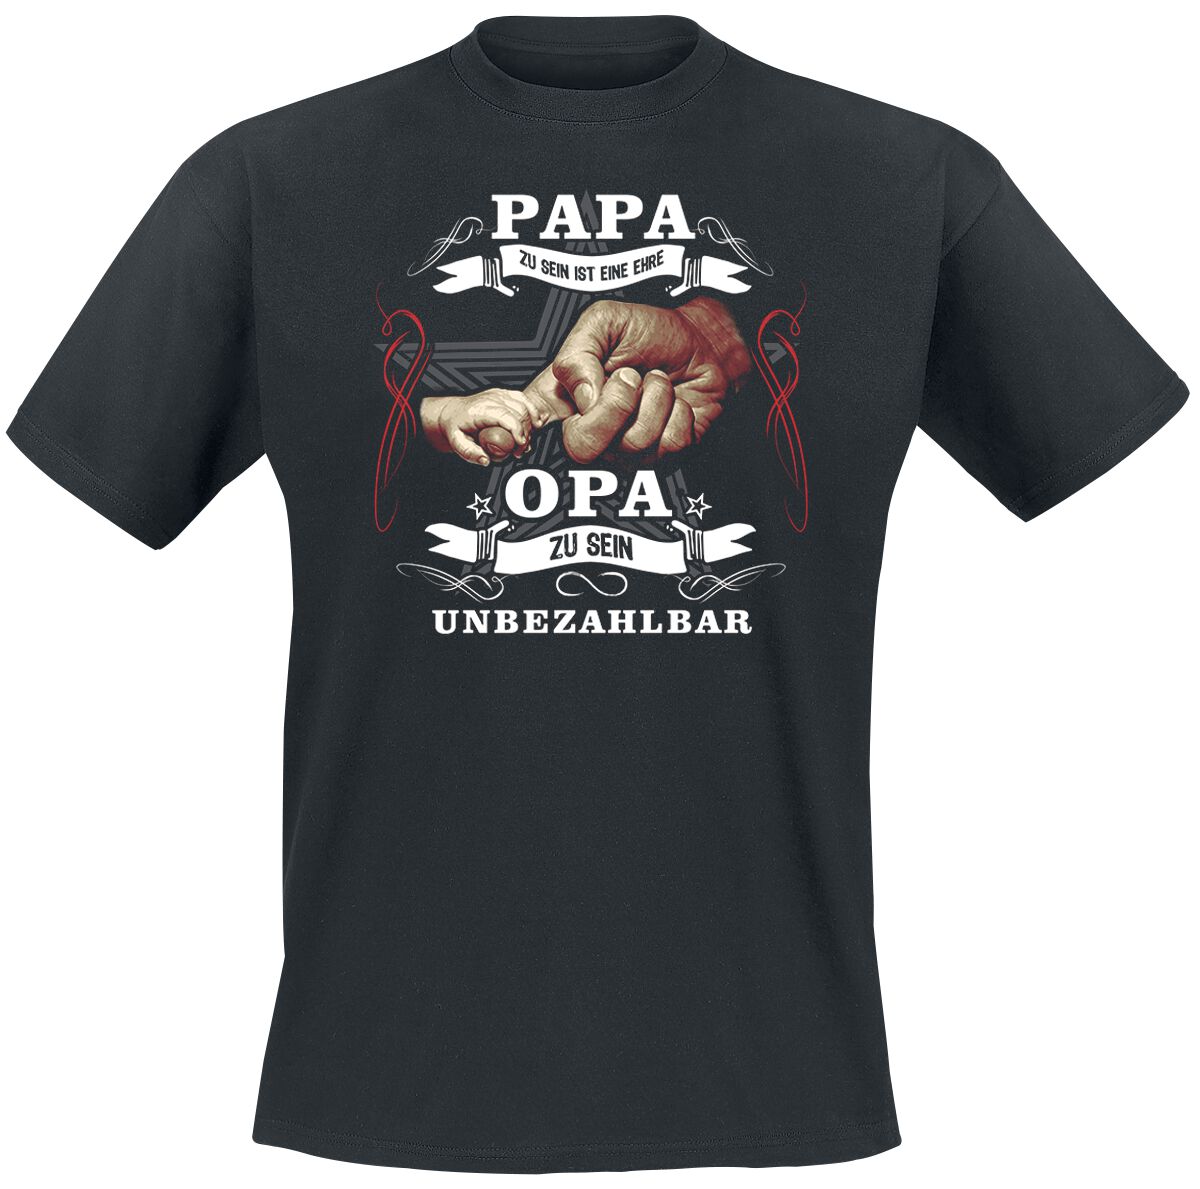 Familie & Freunde T-Shirt - Papa zu sein ist eine Ehre - XXL bis 5XL - für Männer - Größe XXL - schwarz